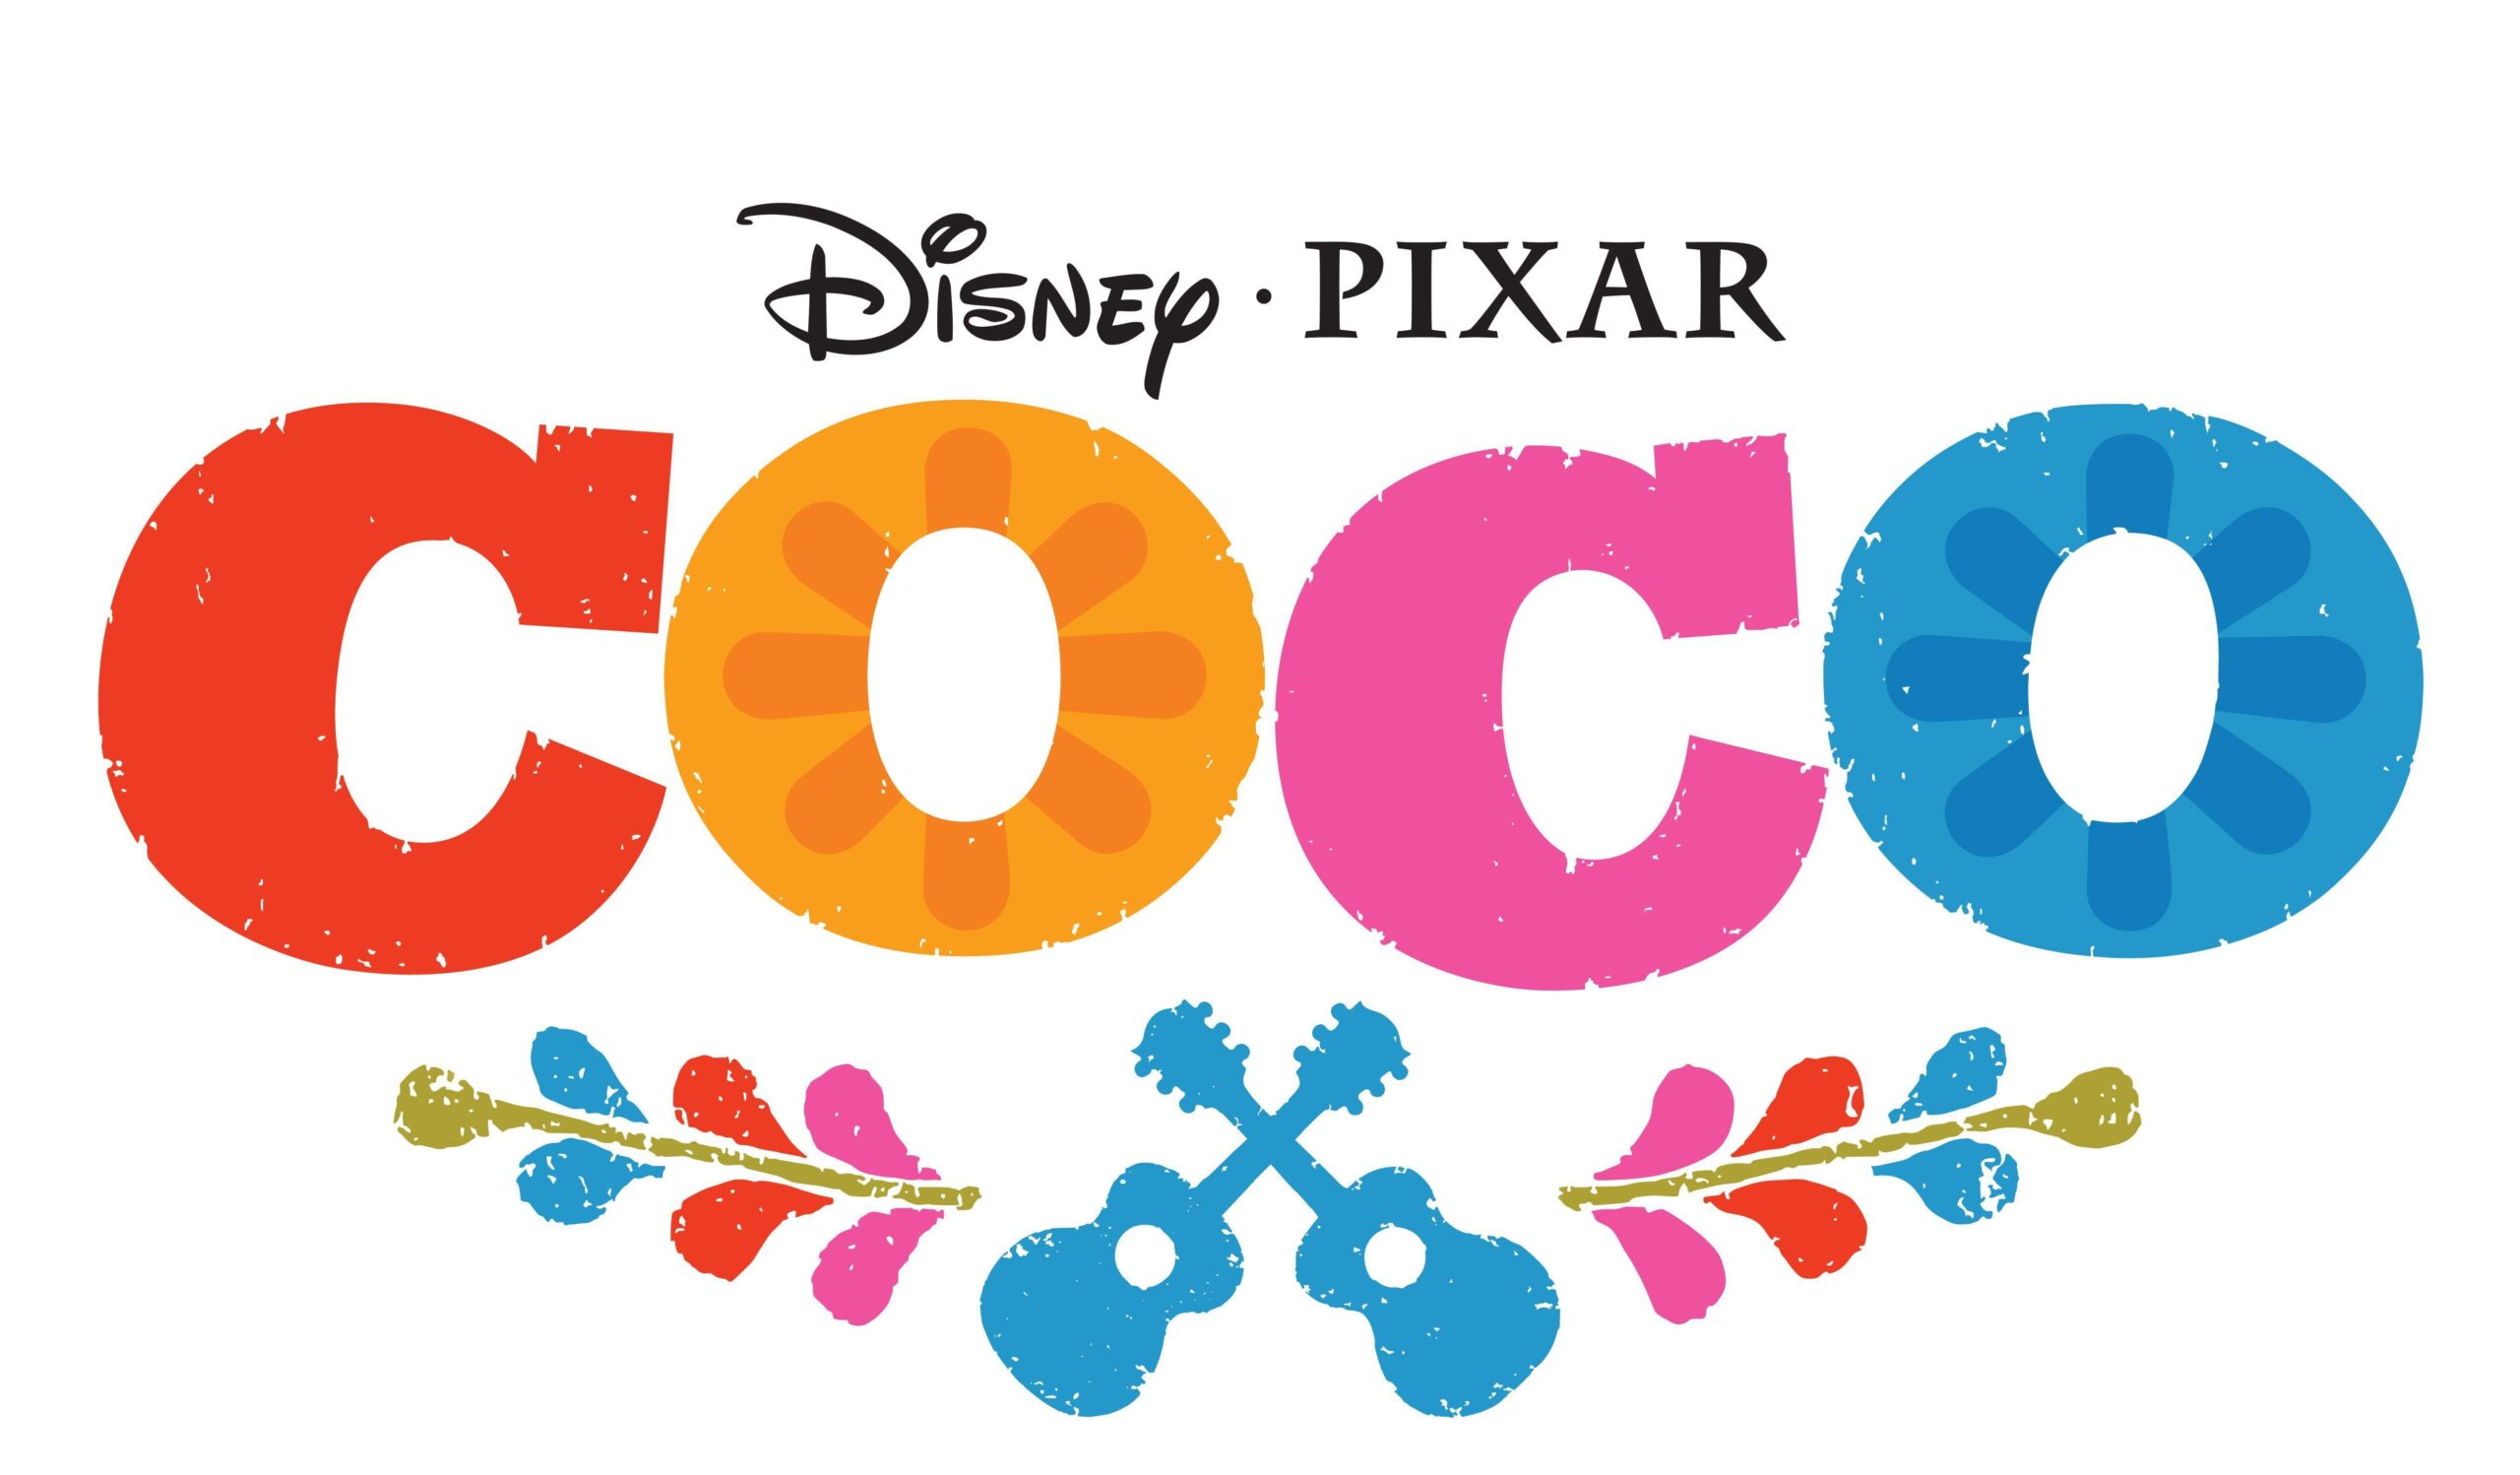 Coco Pixar Desktop Wallpaper Full Screen